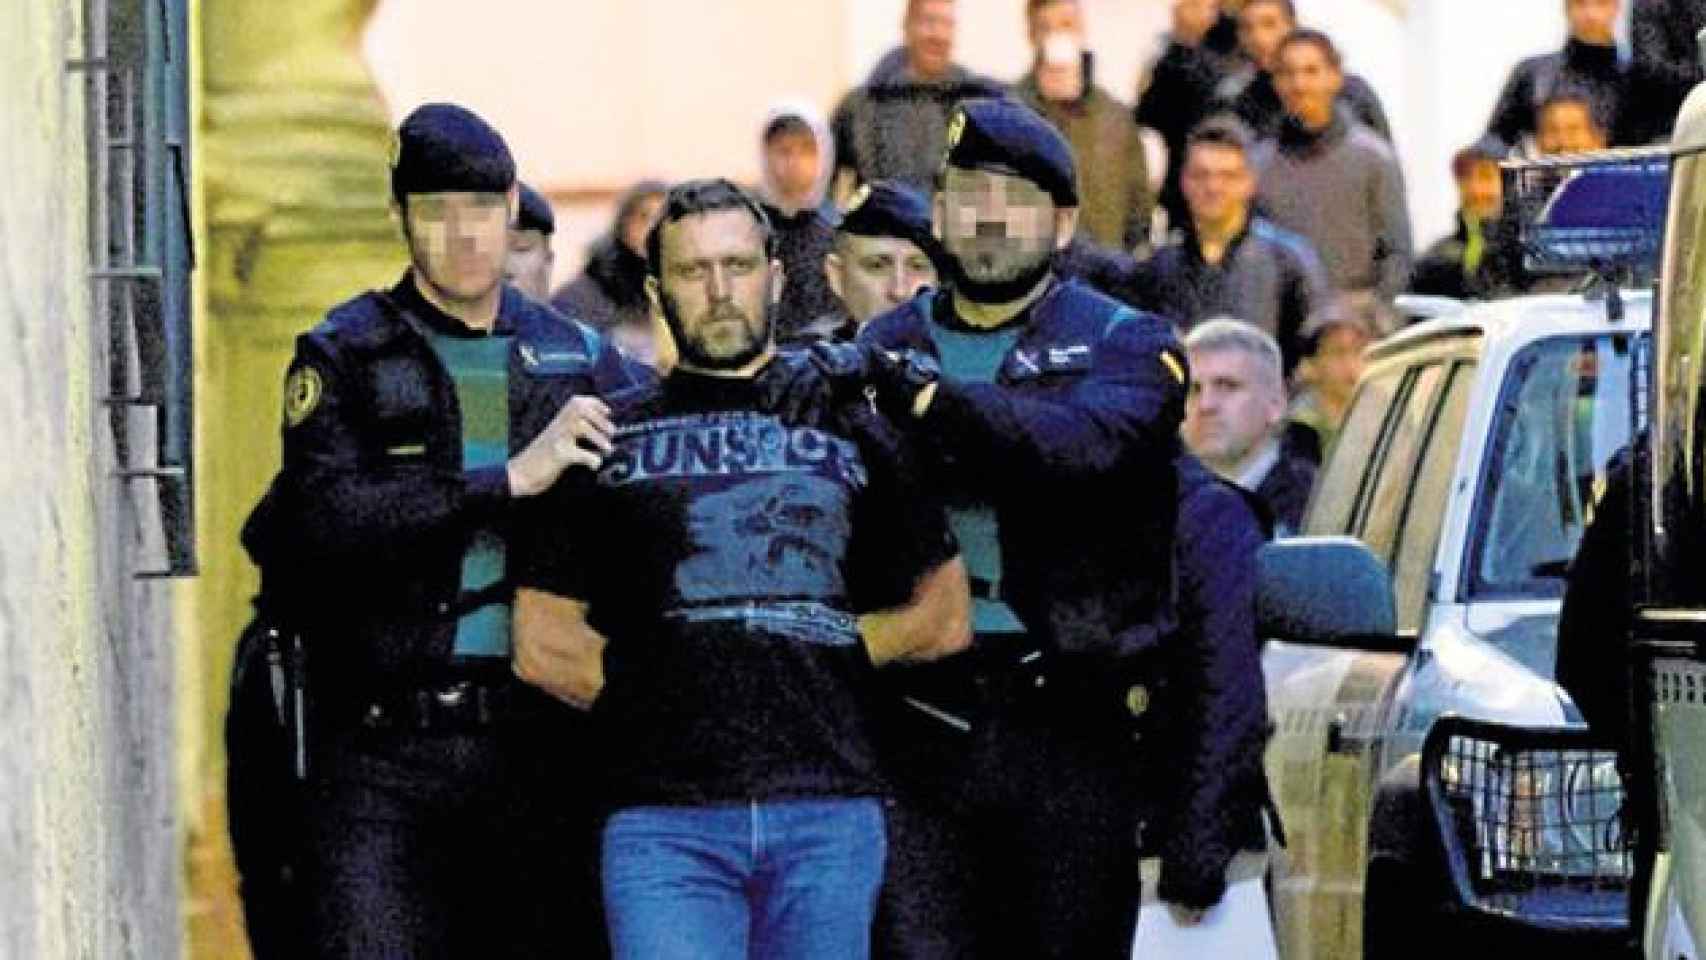 Ígor el Ruso, posible autor del crimen de dos jóvenes en el pantano de Susqueda, detenido por la Guardia Civil en Teruel / EFE